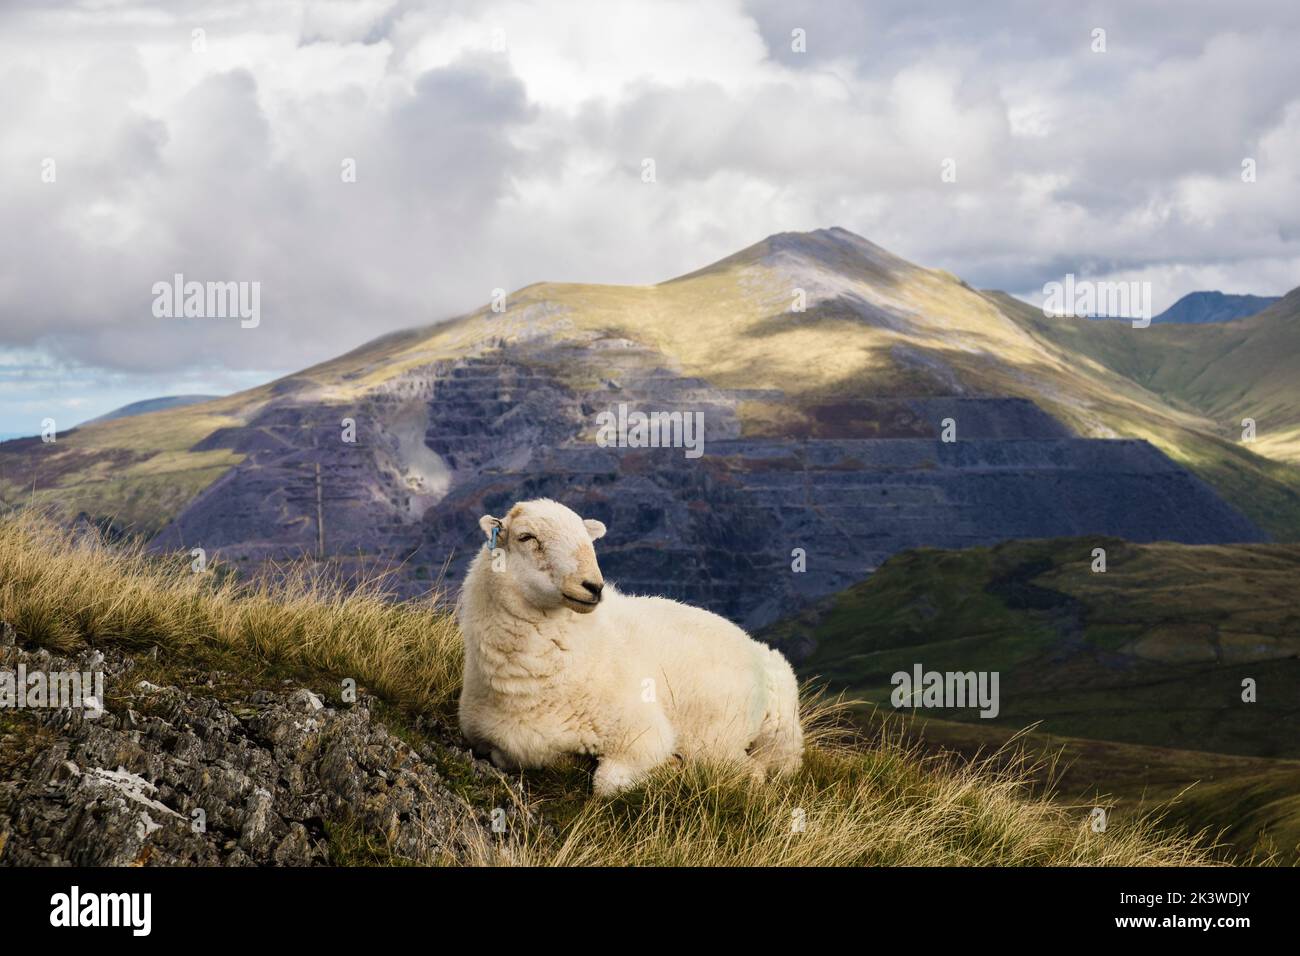 Un mouton de montagne gallois avec une carrière d'ardoise de Dinorwig sur Elidir Fawr comme toile de fond dans le parc national de Snowdonia. Foel Gnon, Llanberis Gwynedd, nord du pays de Galles, Royaume-Uni Banque D'Images